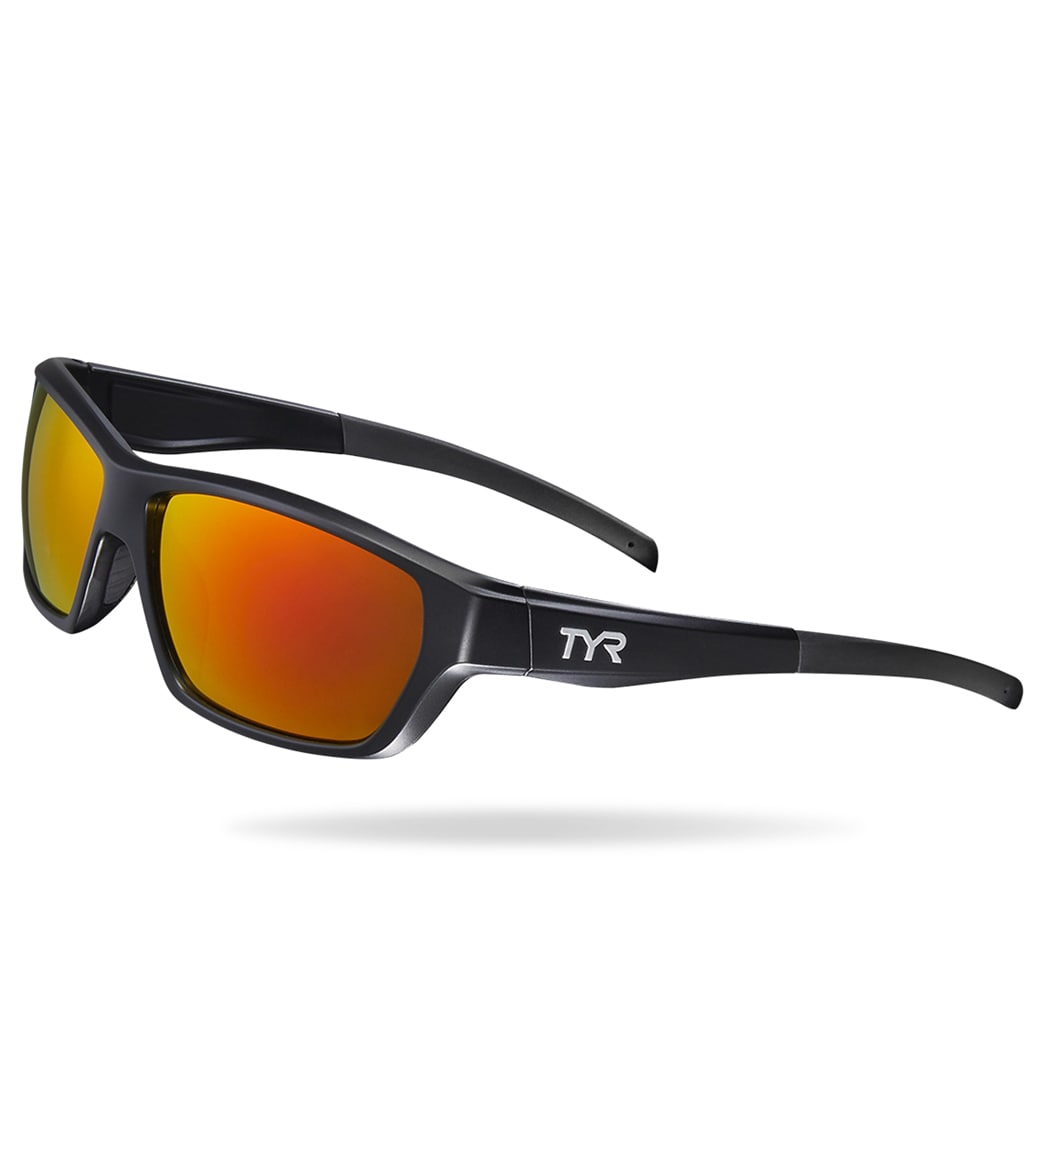 TYR Men's Cortez Sport Wrap Sunglasses - Red/Black - Swimoutlet.com